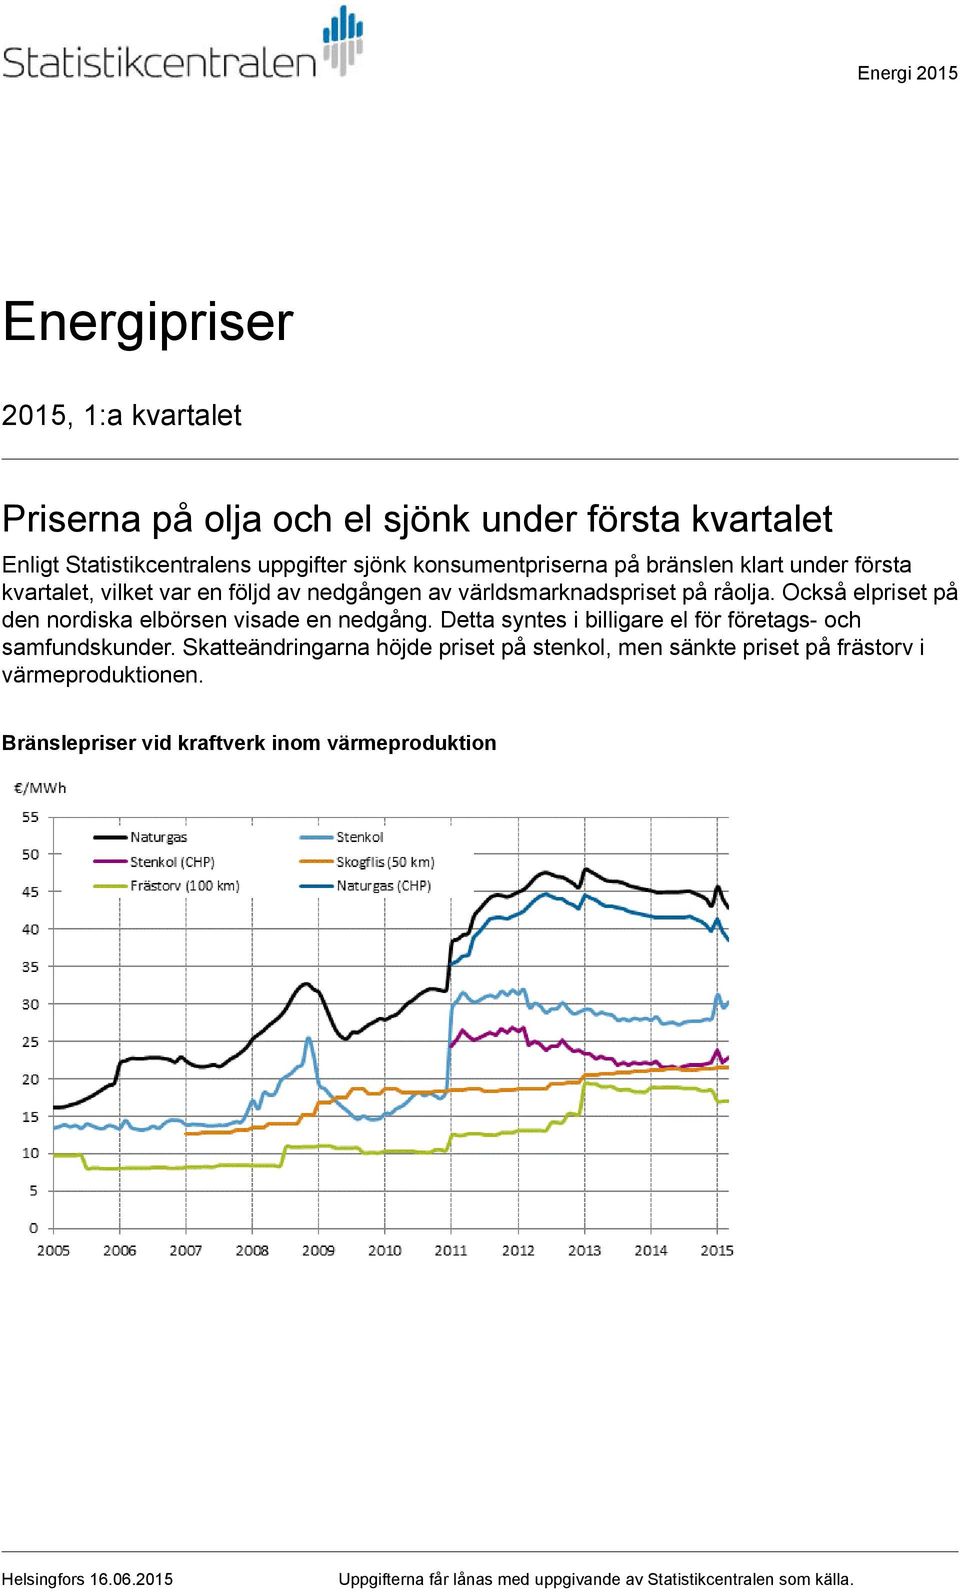 Också elpriset på den nordiska elbörsen visade en nedgång. Detta syntes i billigare el för företags och samfundskunder.